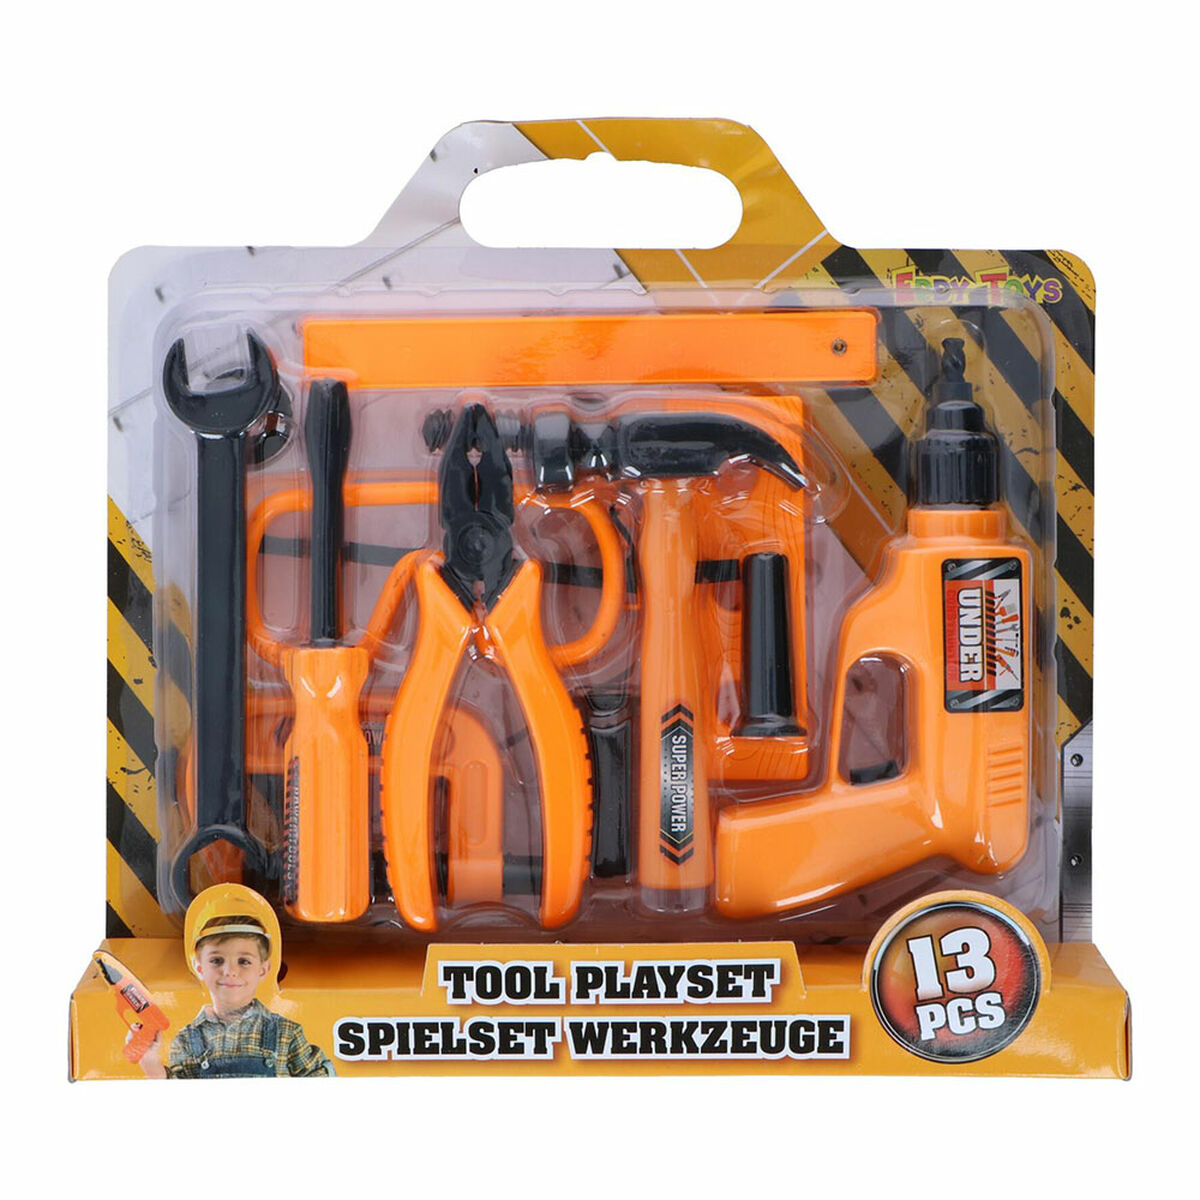 Spielzeug-Werkzeuge Eddy Toys 13 Stücke